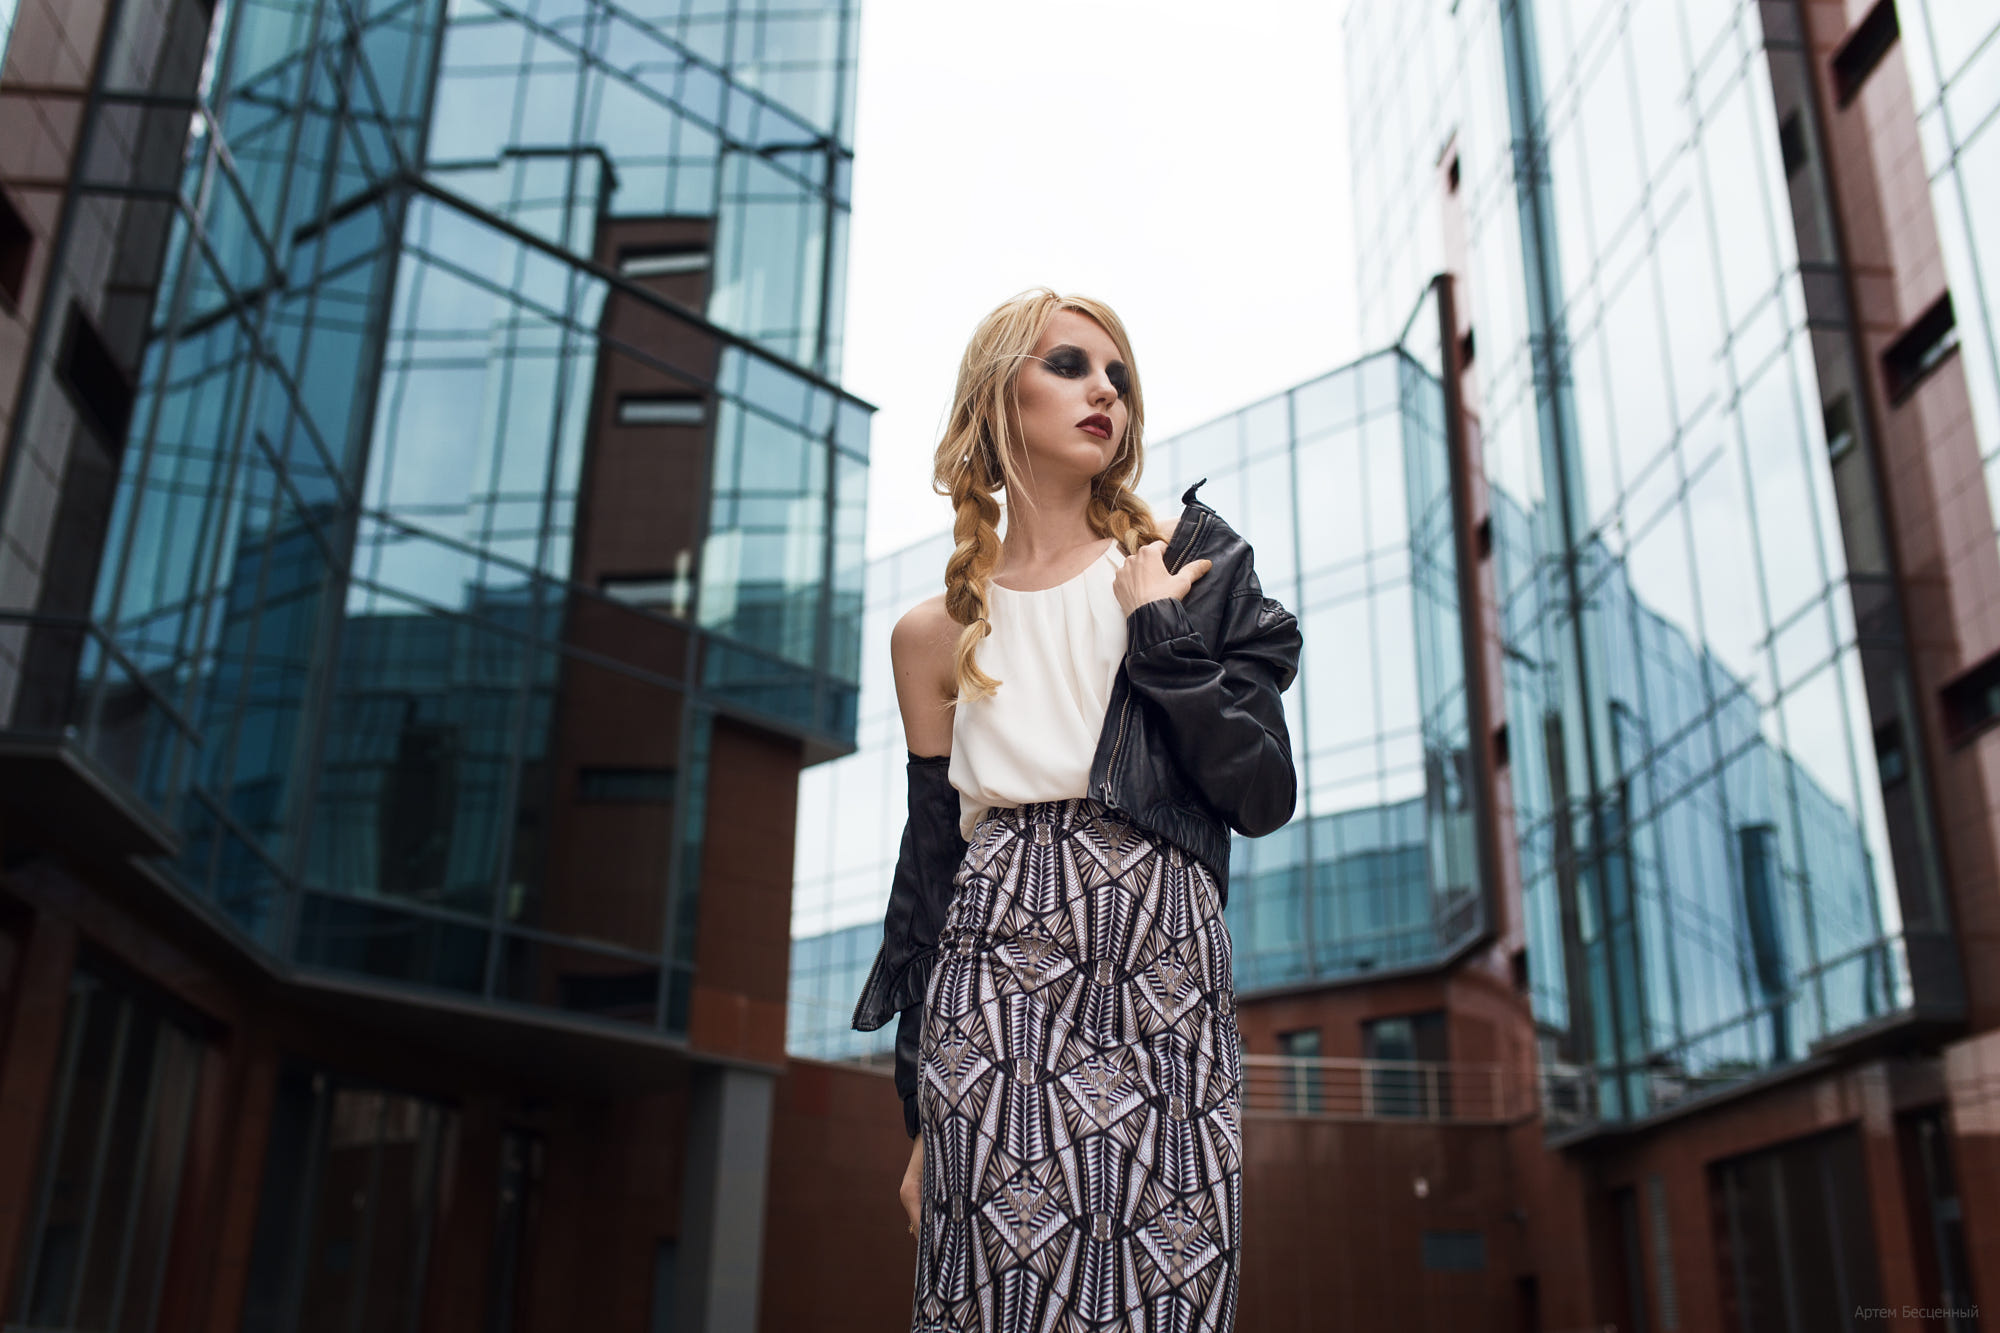 People 2000x1333 blonde city skyscraper jacket leather model portrait street dress twintails Artem Bestsenny women